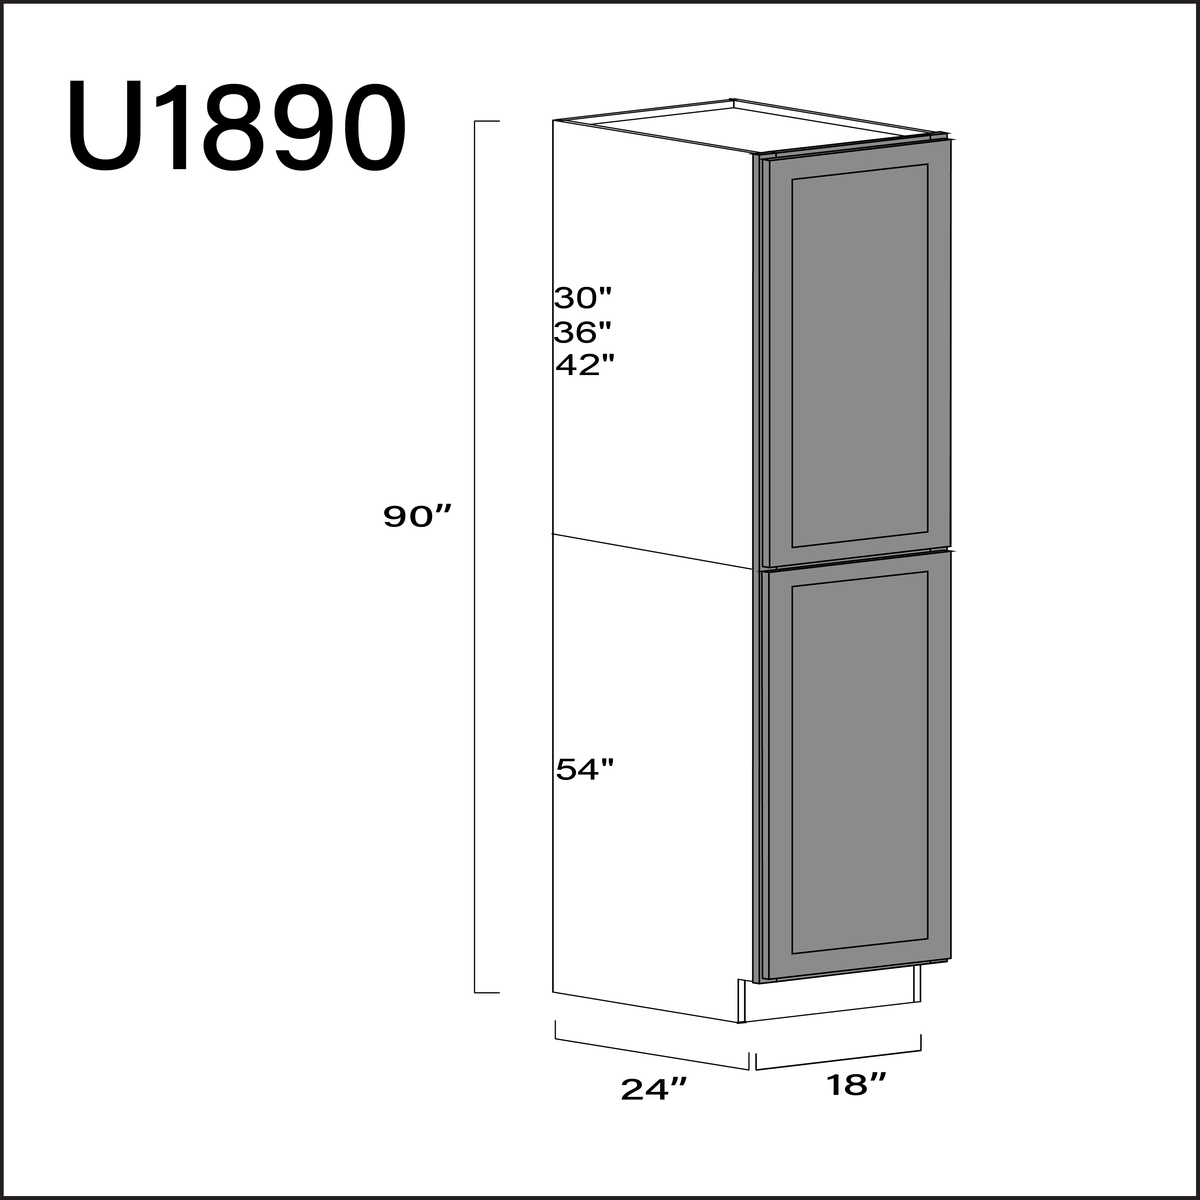 Gray Shaker Single Door Pantry Cabinet - 18" W x 90" H x 24" D